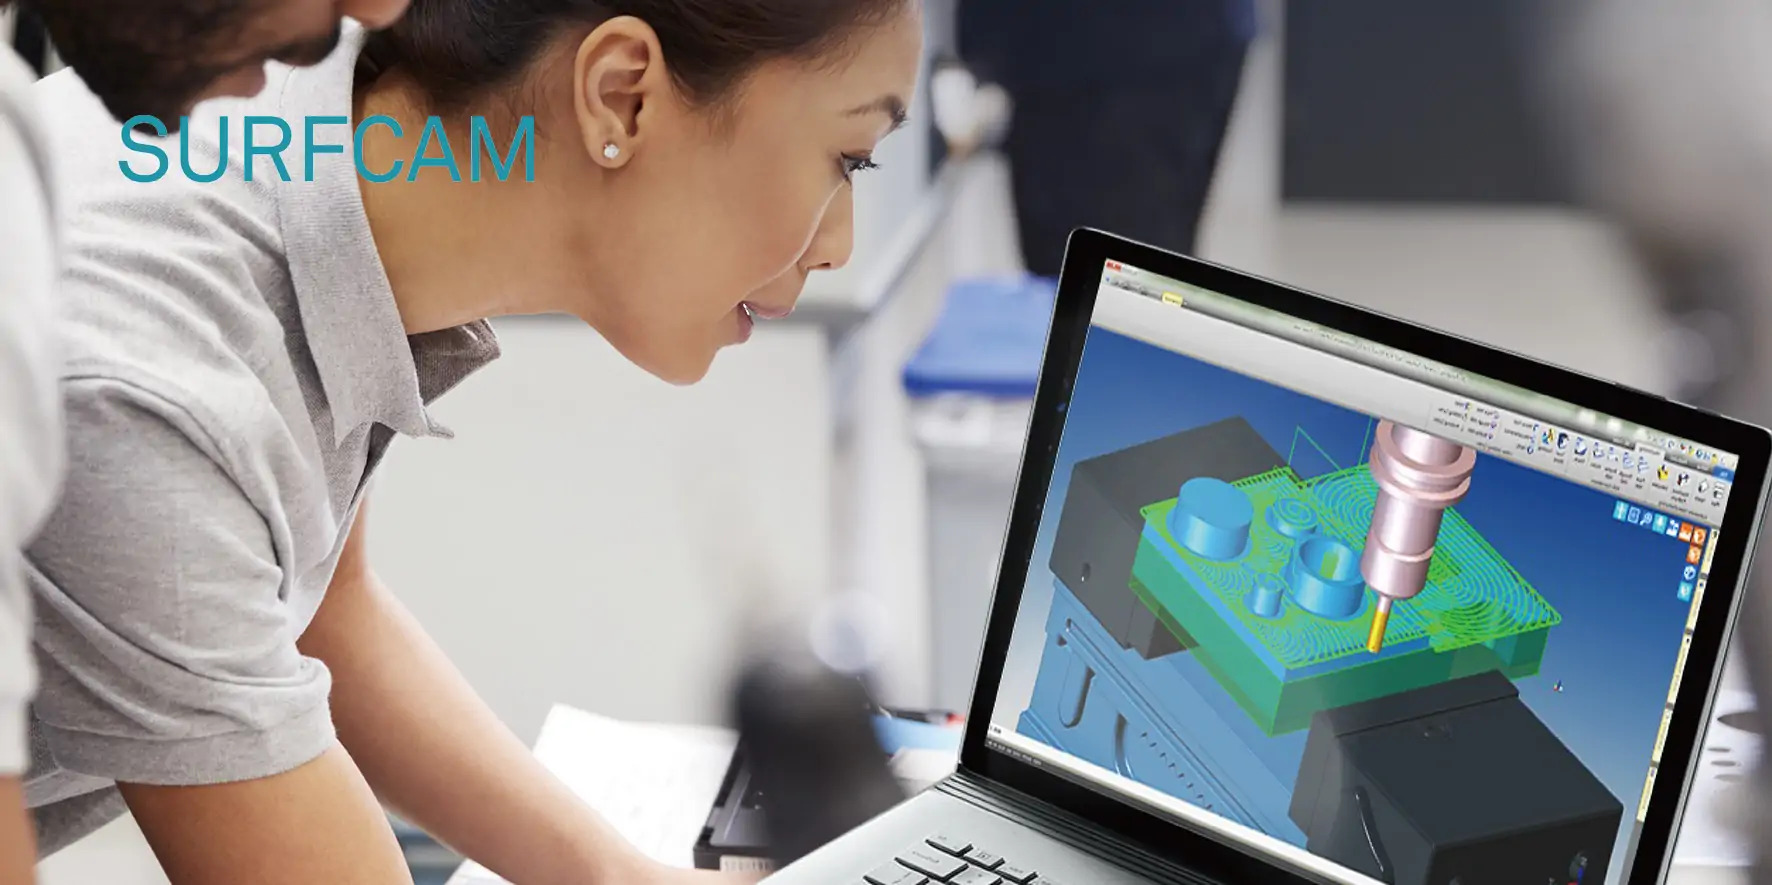 เทคโนโลยี 3D-CAM รอบทิศทาง
พร้อมกลยุทธ์การตัดเฉือนทั้งหมด